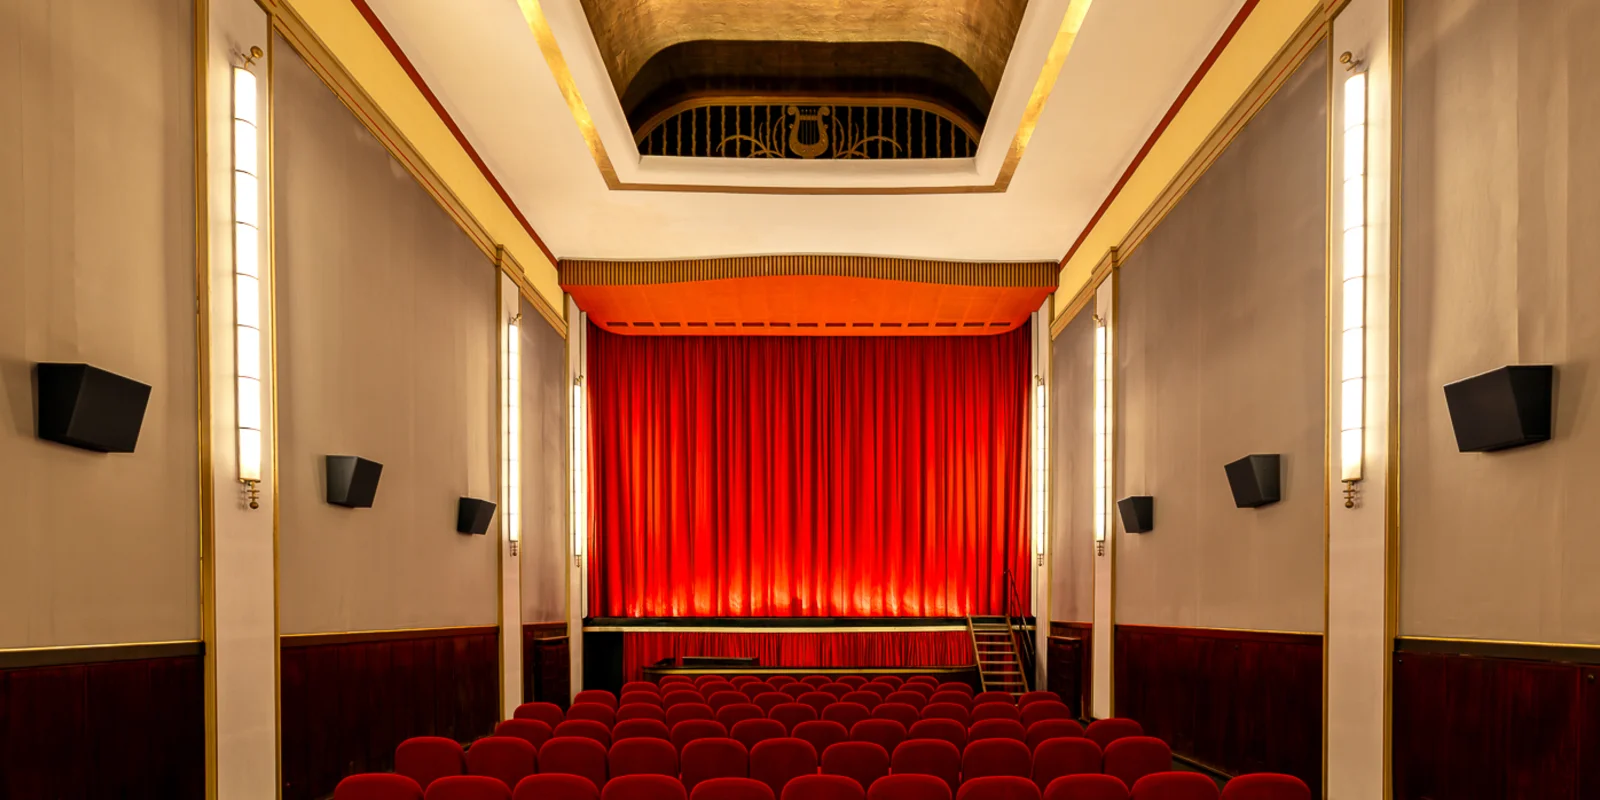 Blick über die roten Kinosessel auf den erleuchteten roten Vorhang des Kinosaals